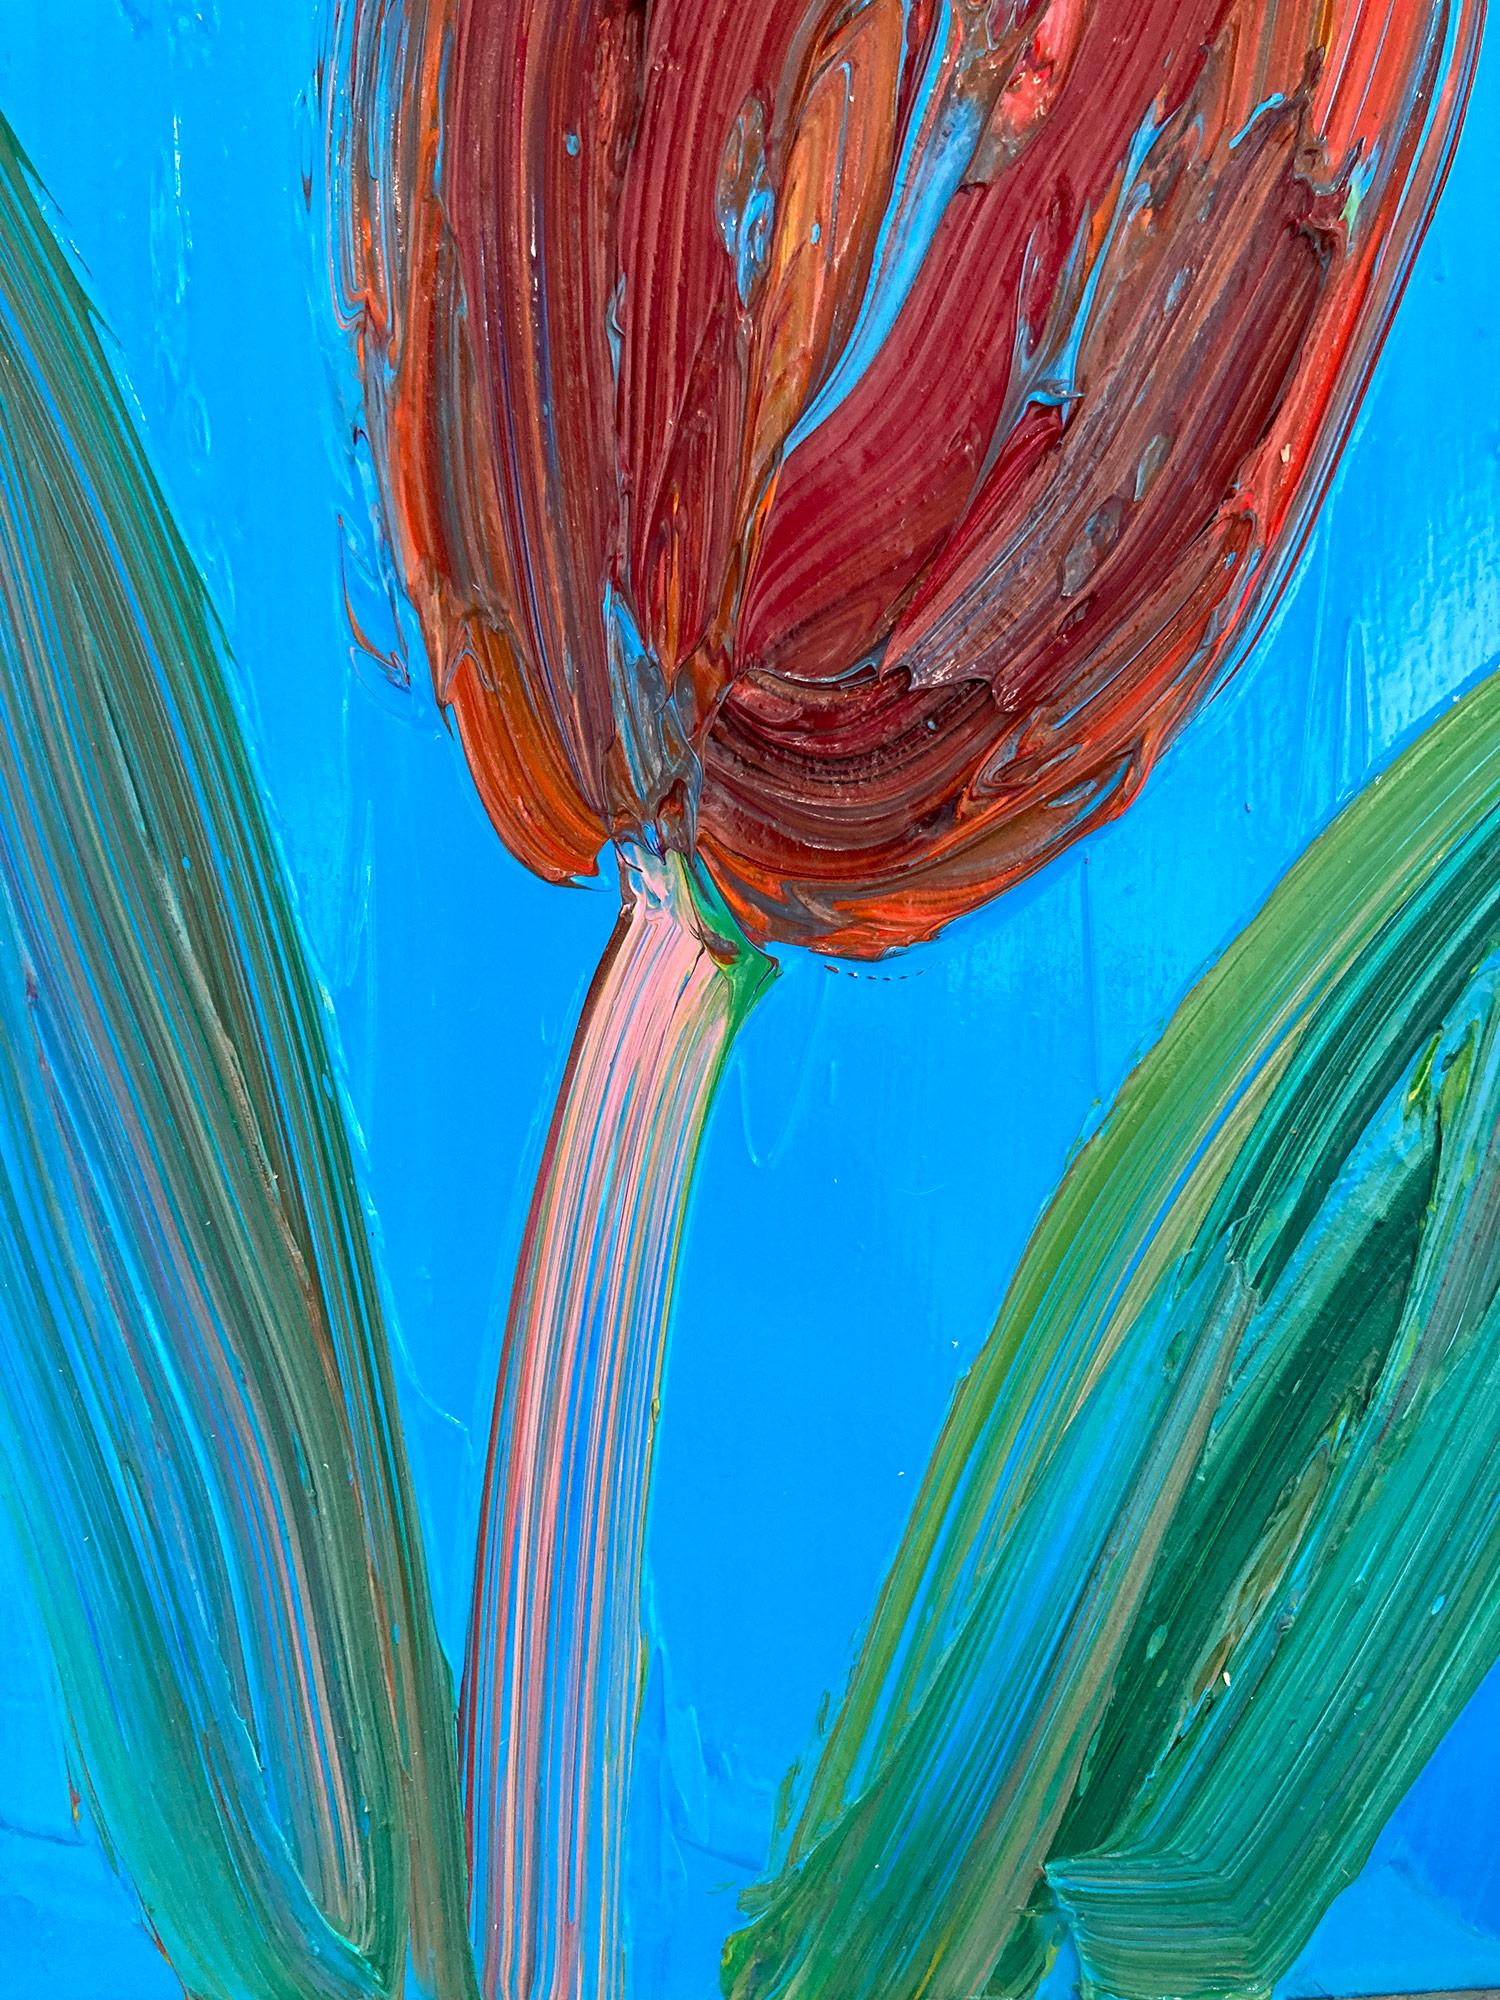 Une magnifique composition de l'une des plus récentes séries de Slonem, Tulipes. Cette pièce représente la figure gestuelle d'une tulipe rouge sur un fond bleu céruléen clair, avec une utilisation épaisse de la peinture. Inspirées par la Nature et